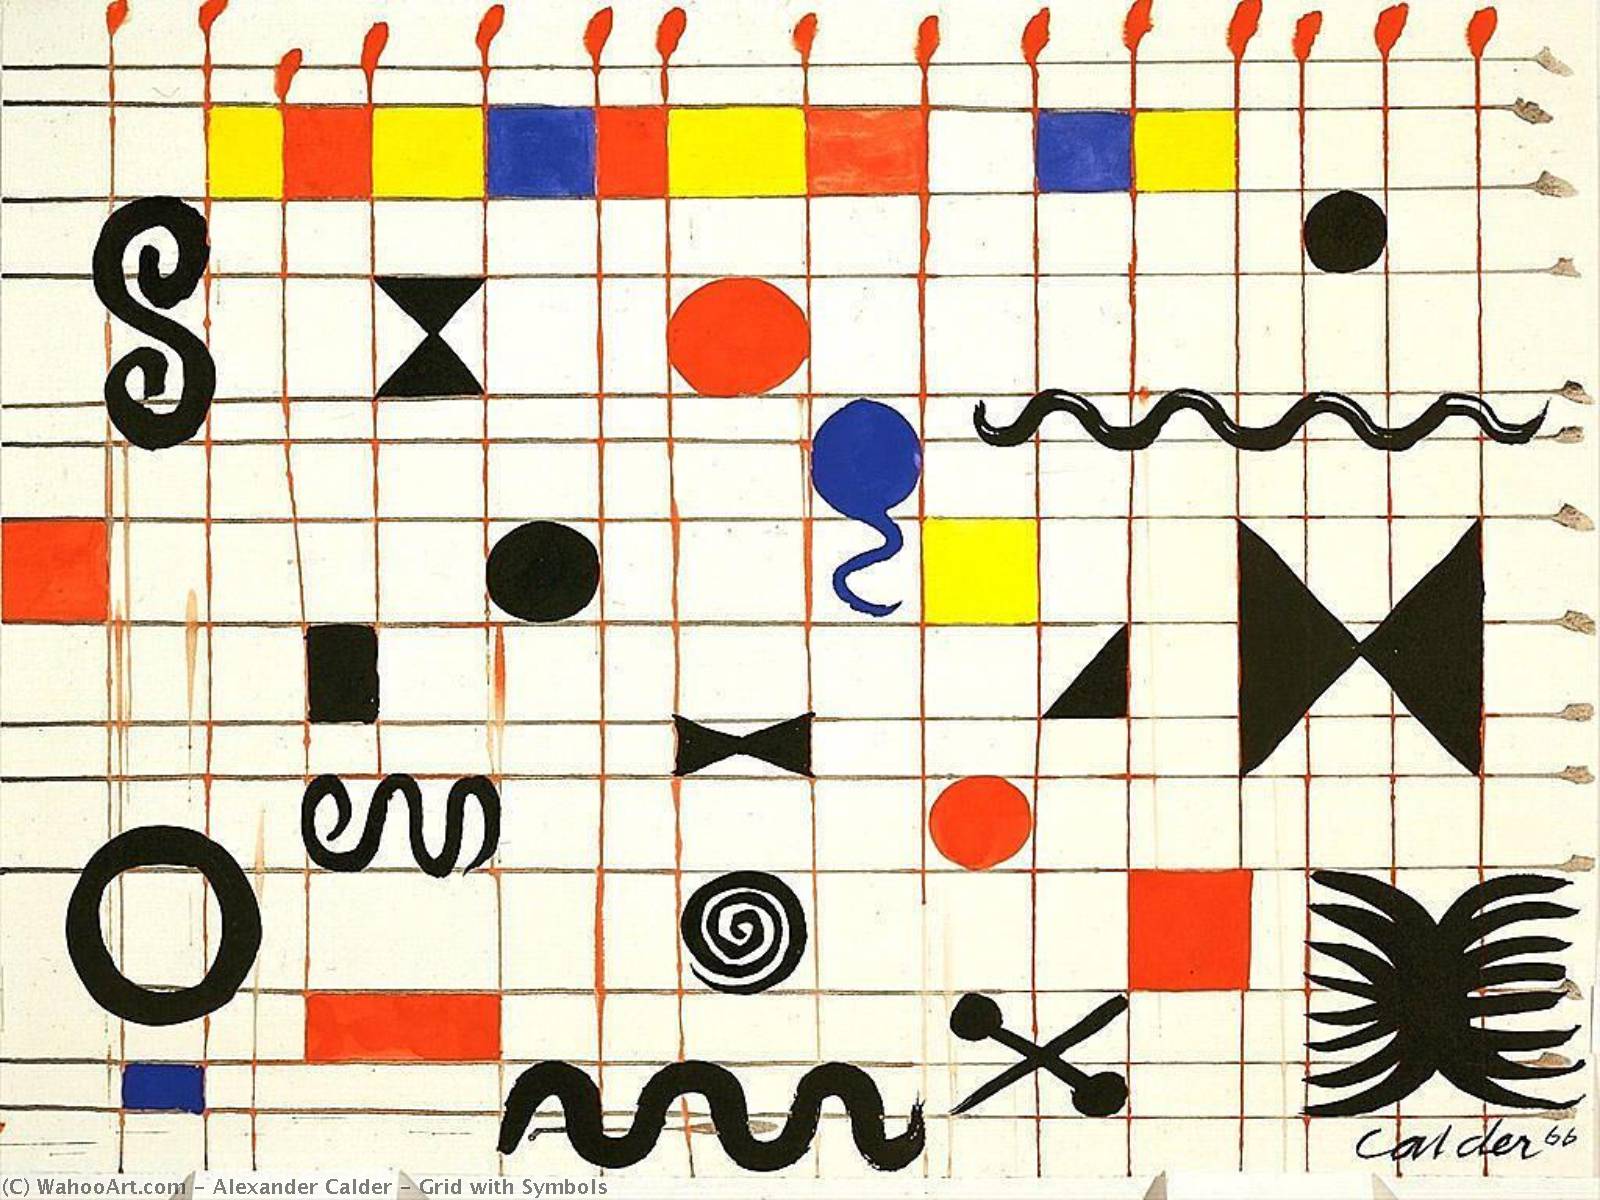 WikiOO.org - Εγκυκλοπαίδεια Καλών Τεχνών - Ζωγραφική, έργα τέχνης Alexander Milne Calder - Grid with Symbols